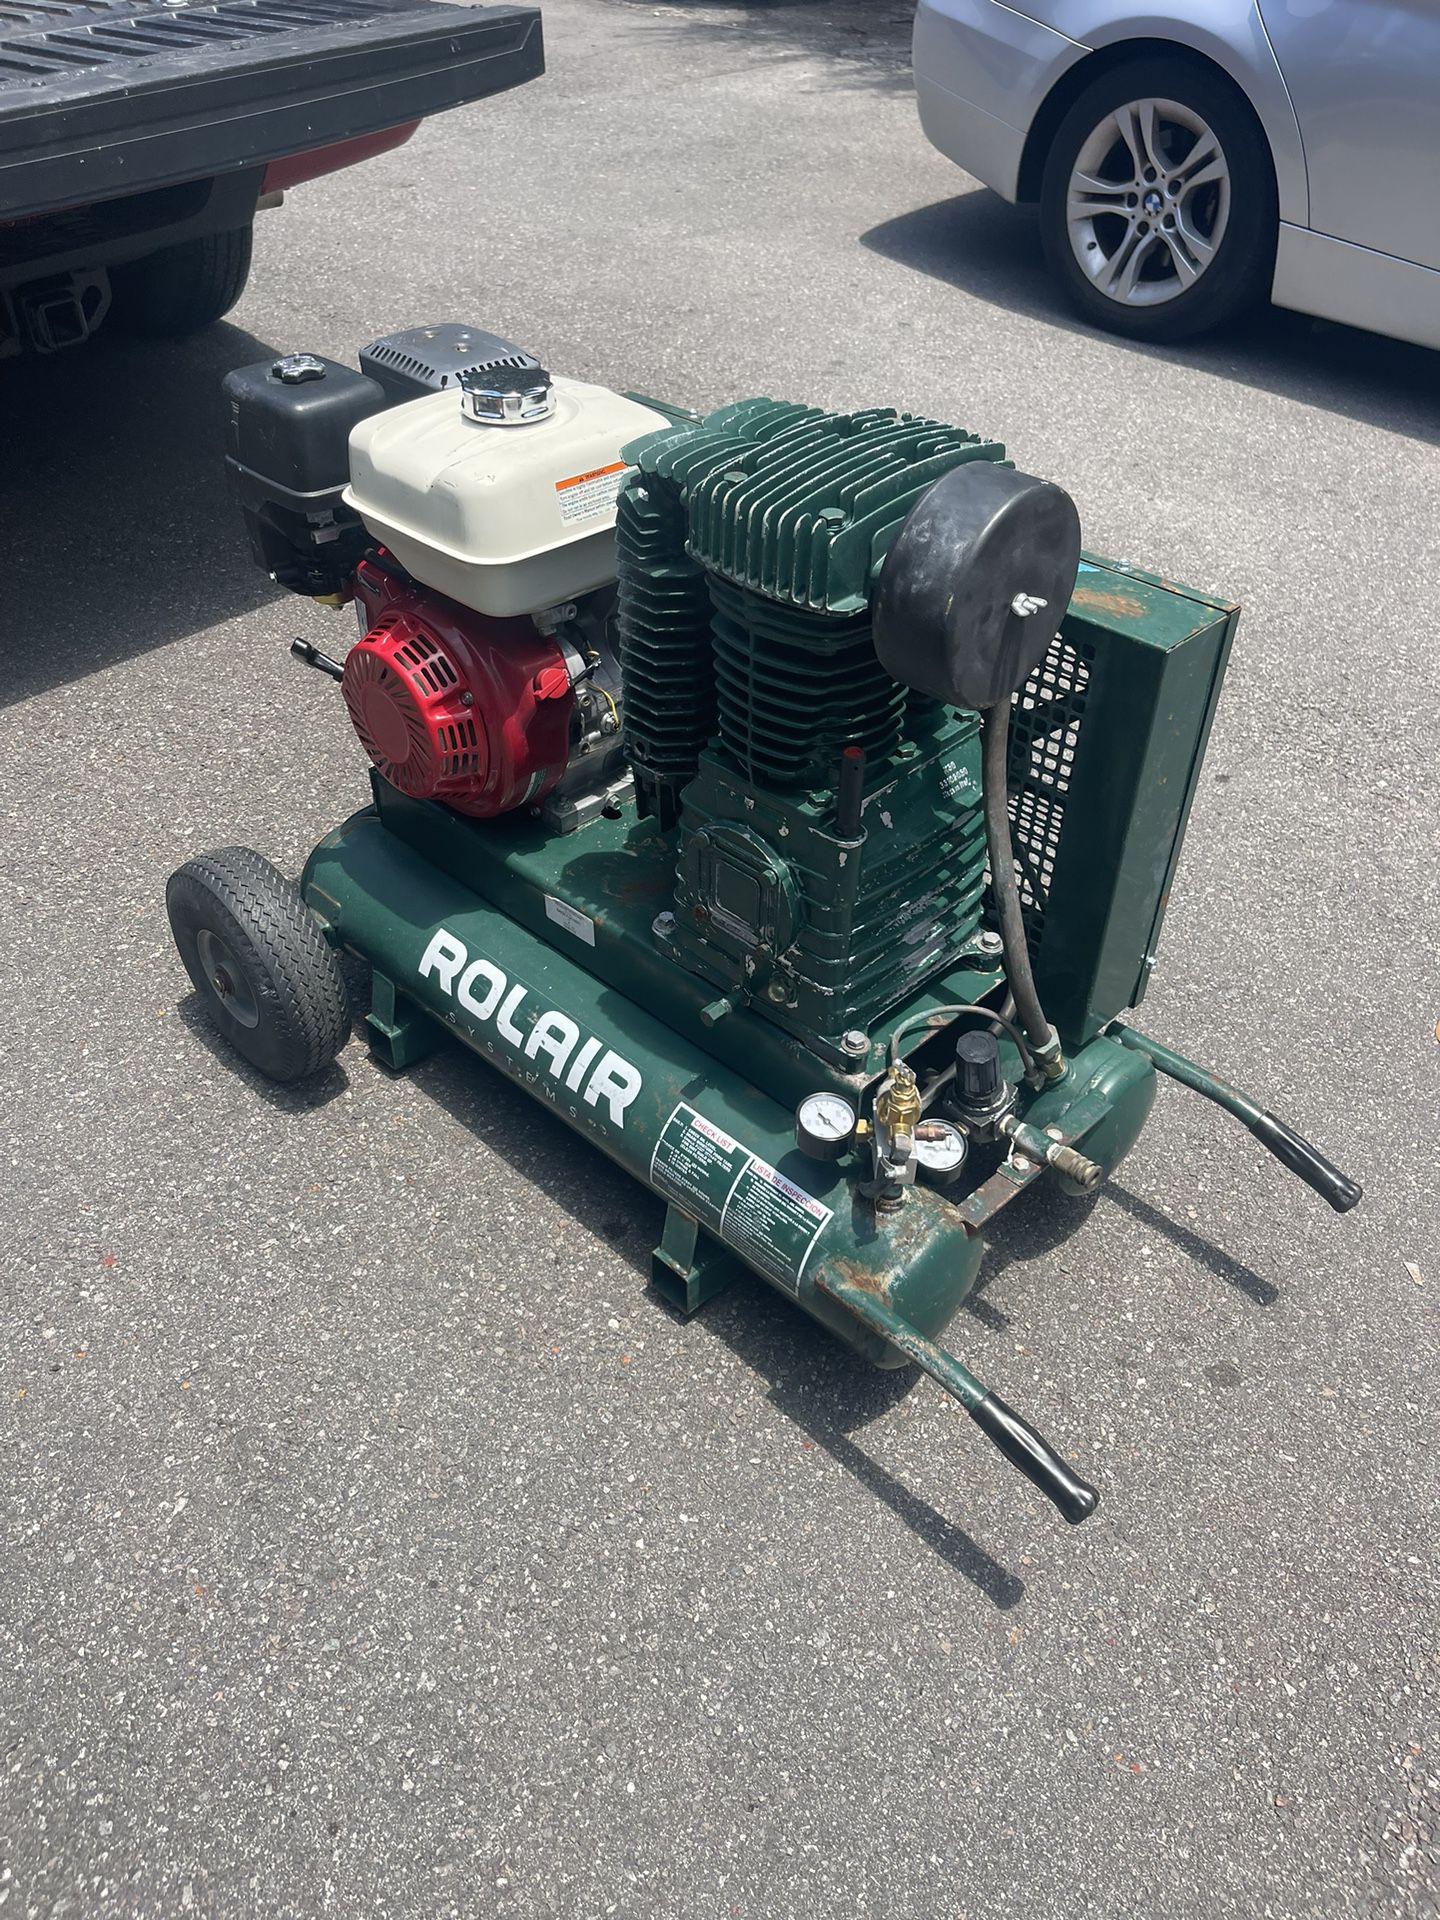 Compressor Rolair + 2 hose 1 adapter